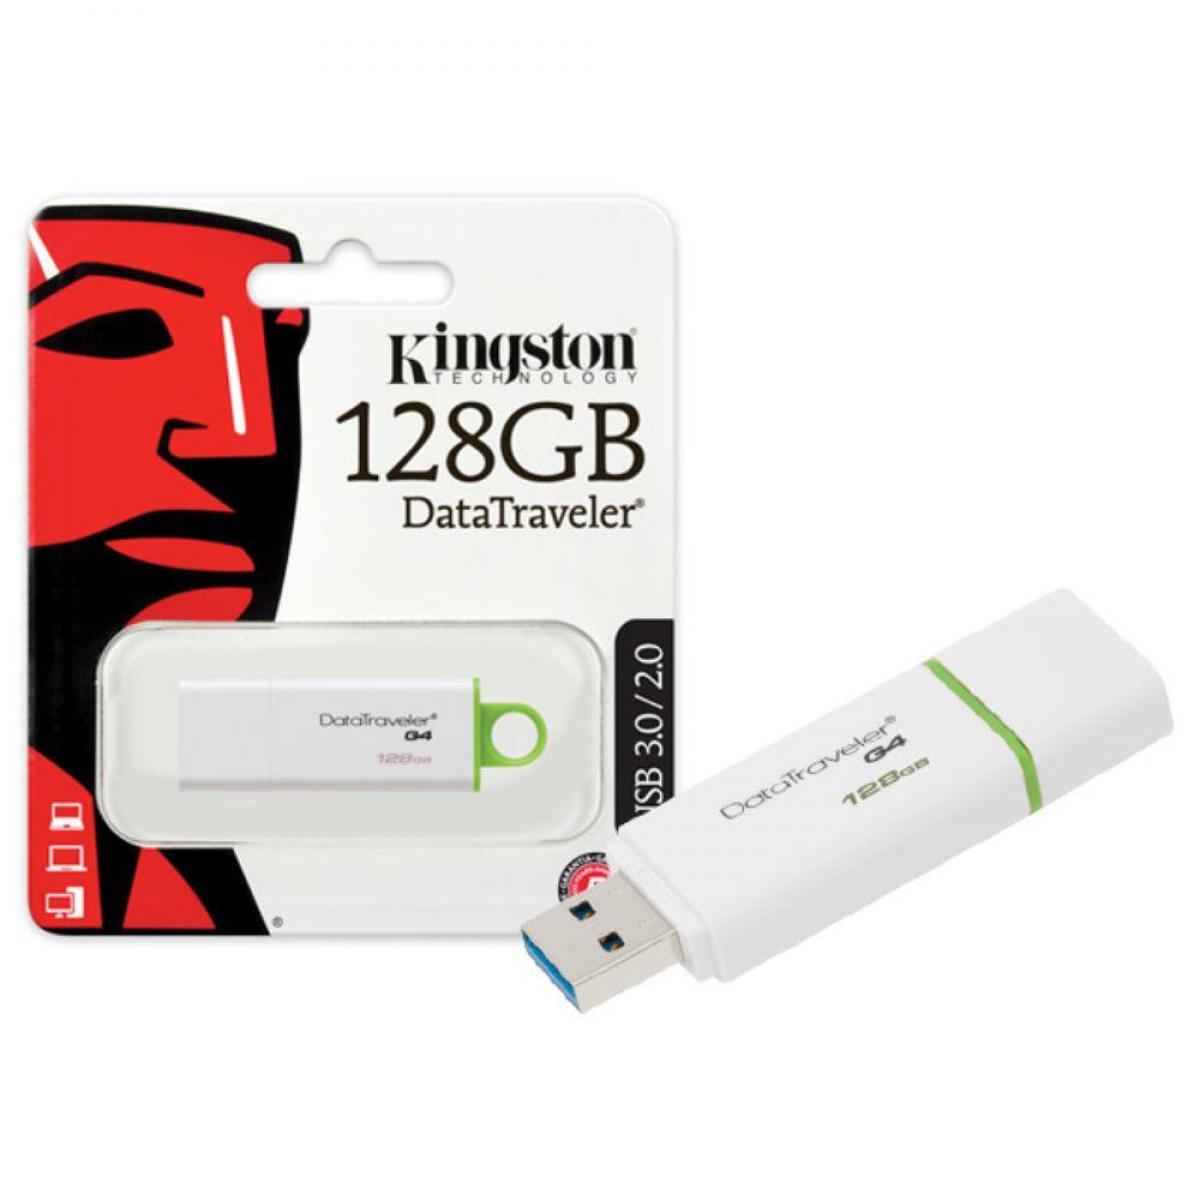 Kingston DTIG4/128GB USB 3.0 Stick Data Traveler (White+Green) | DTIG4/128GB Compu Jordan for